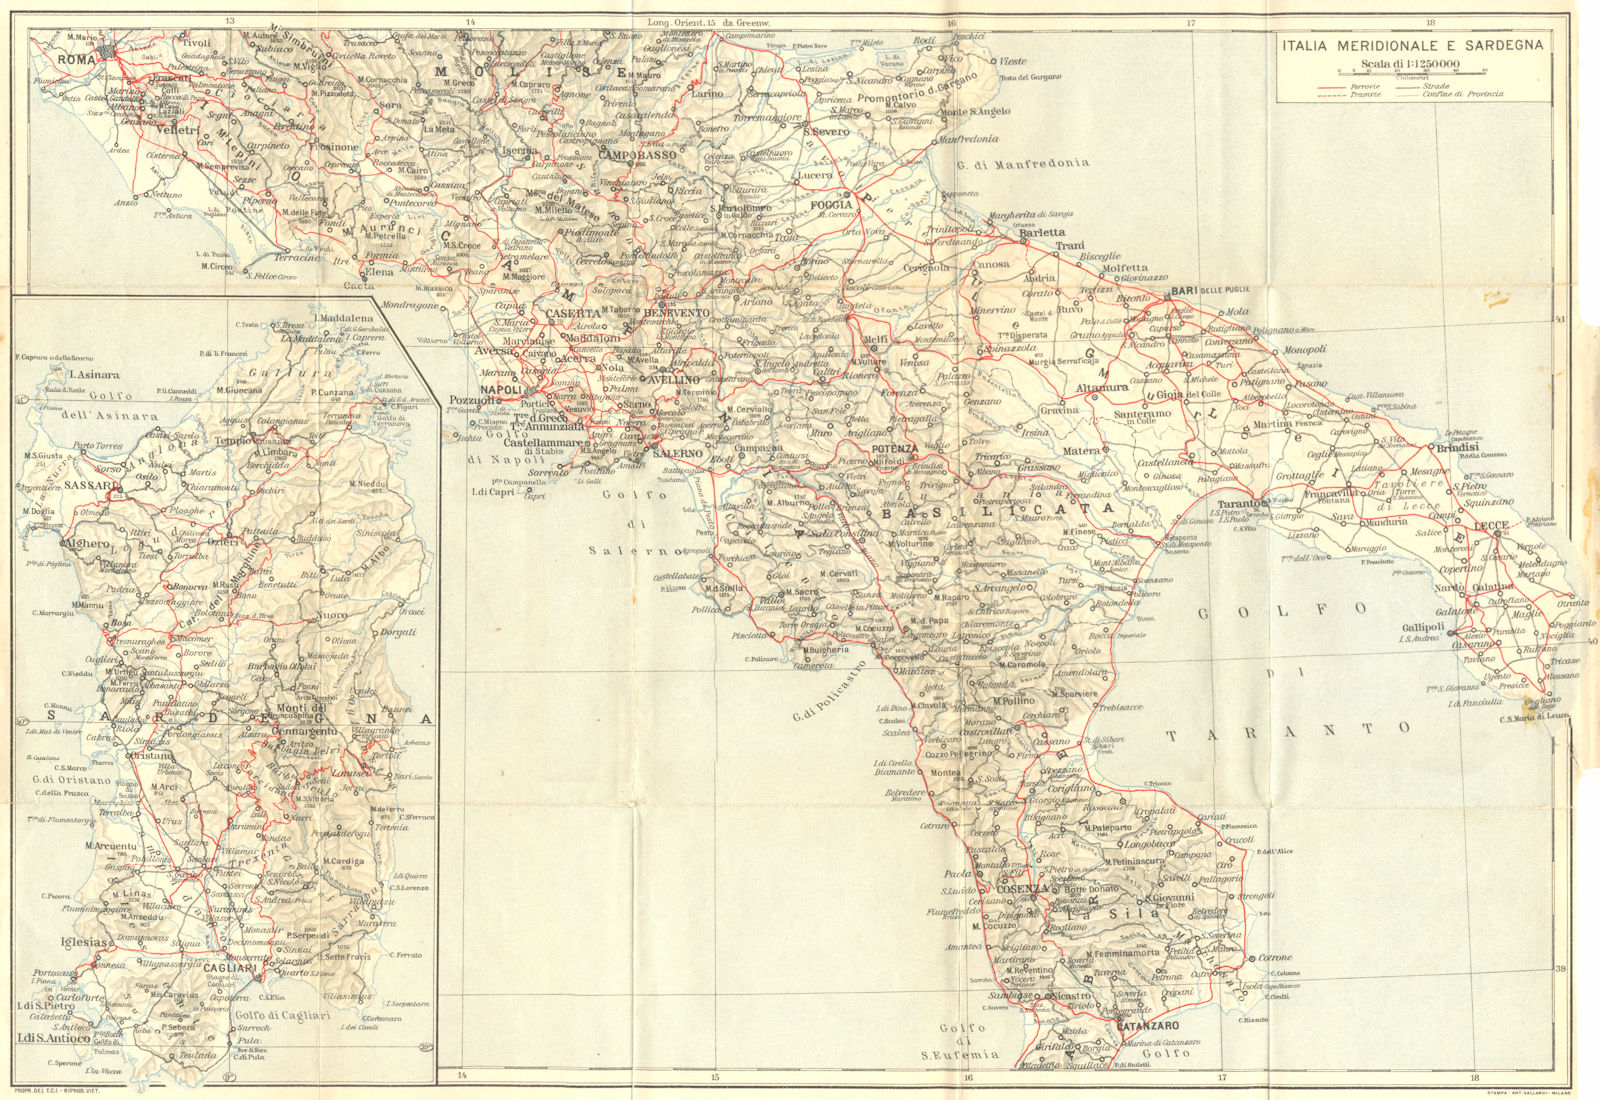 ITALY. Italia Meridionale E Sardegna Sardinia 1925 old vintage map plan chart